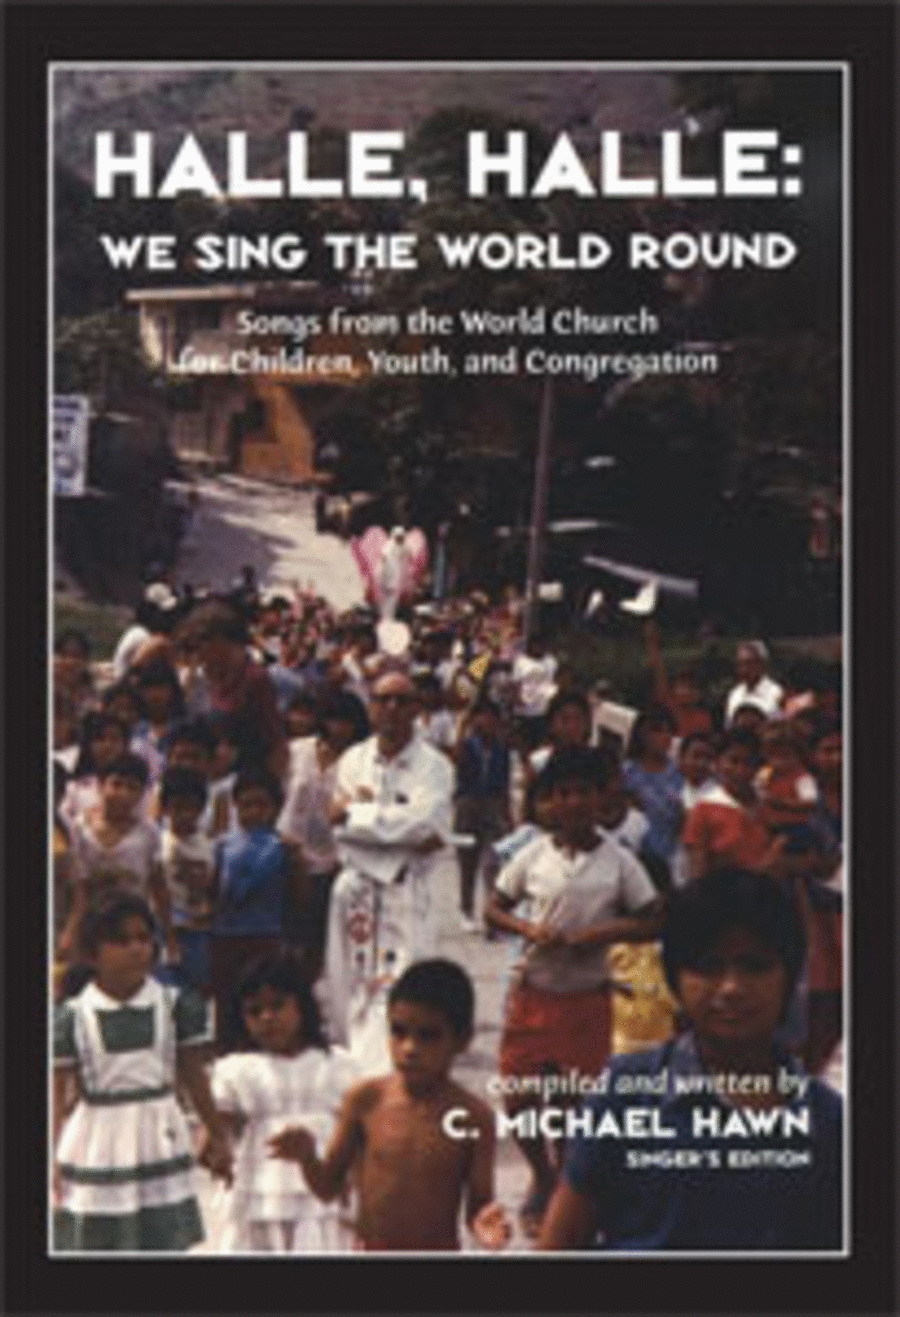 Halle, Halle, We Sing the World Round - Singer